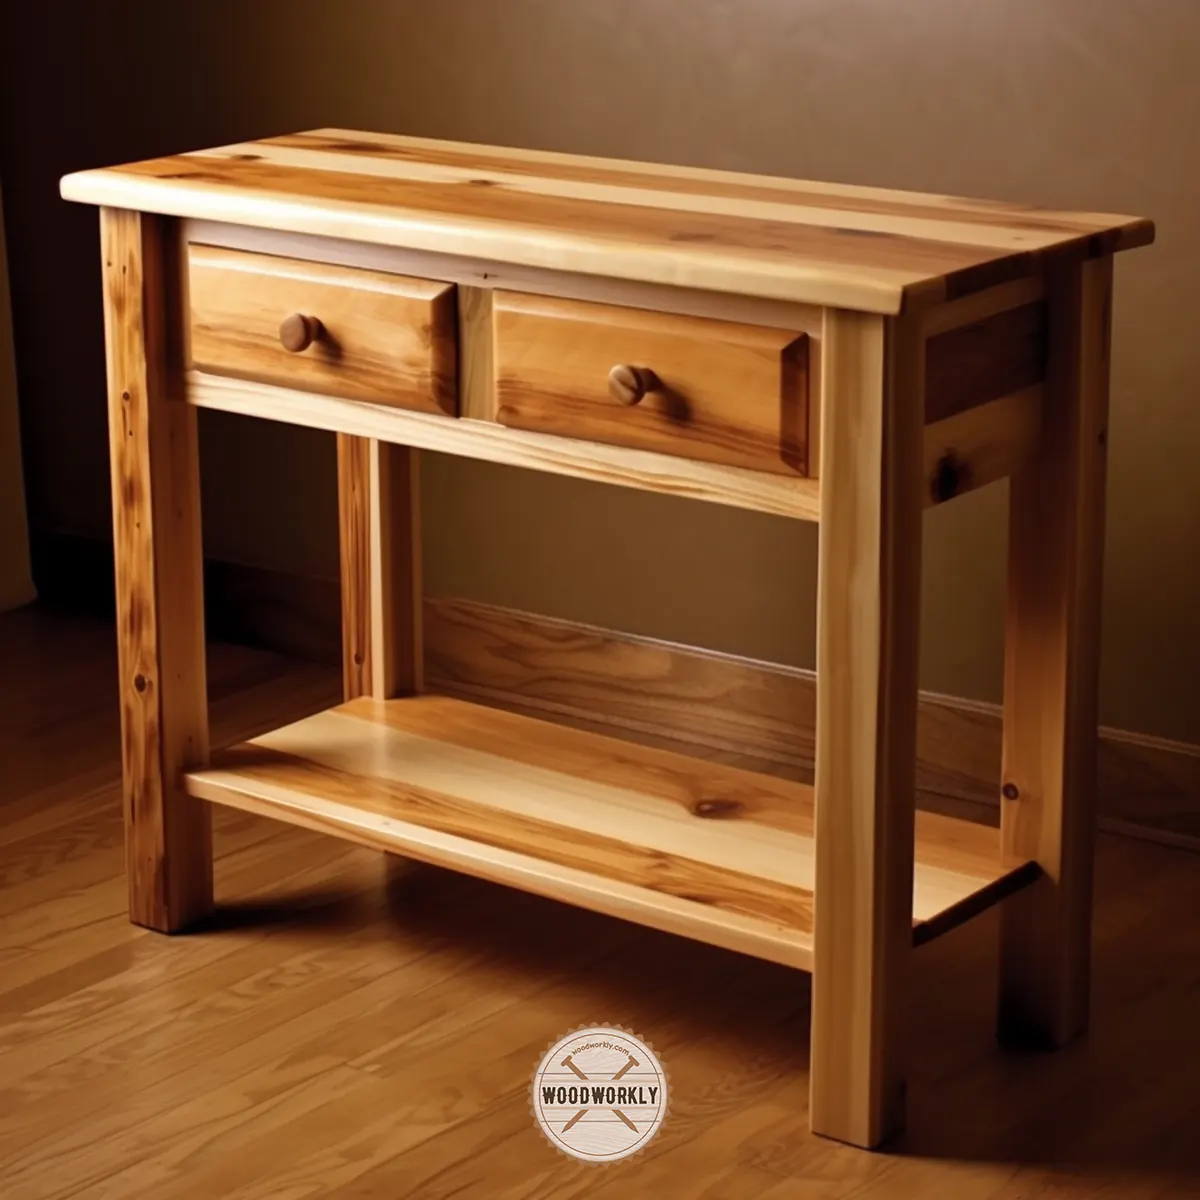 Poplar wood furniture